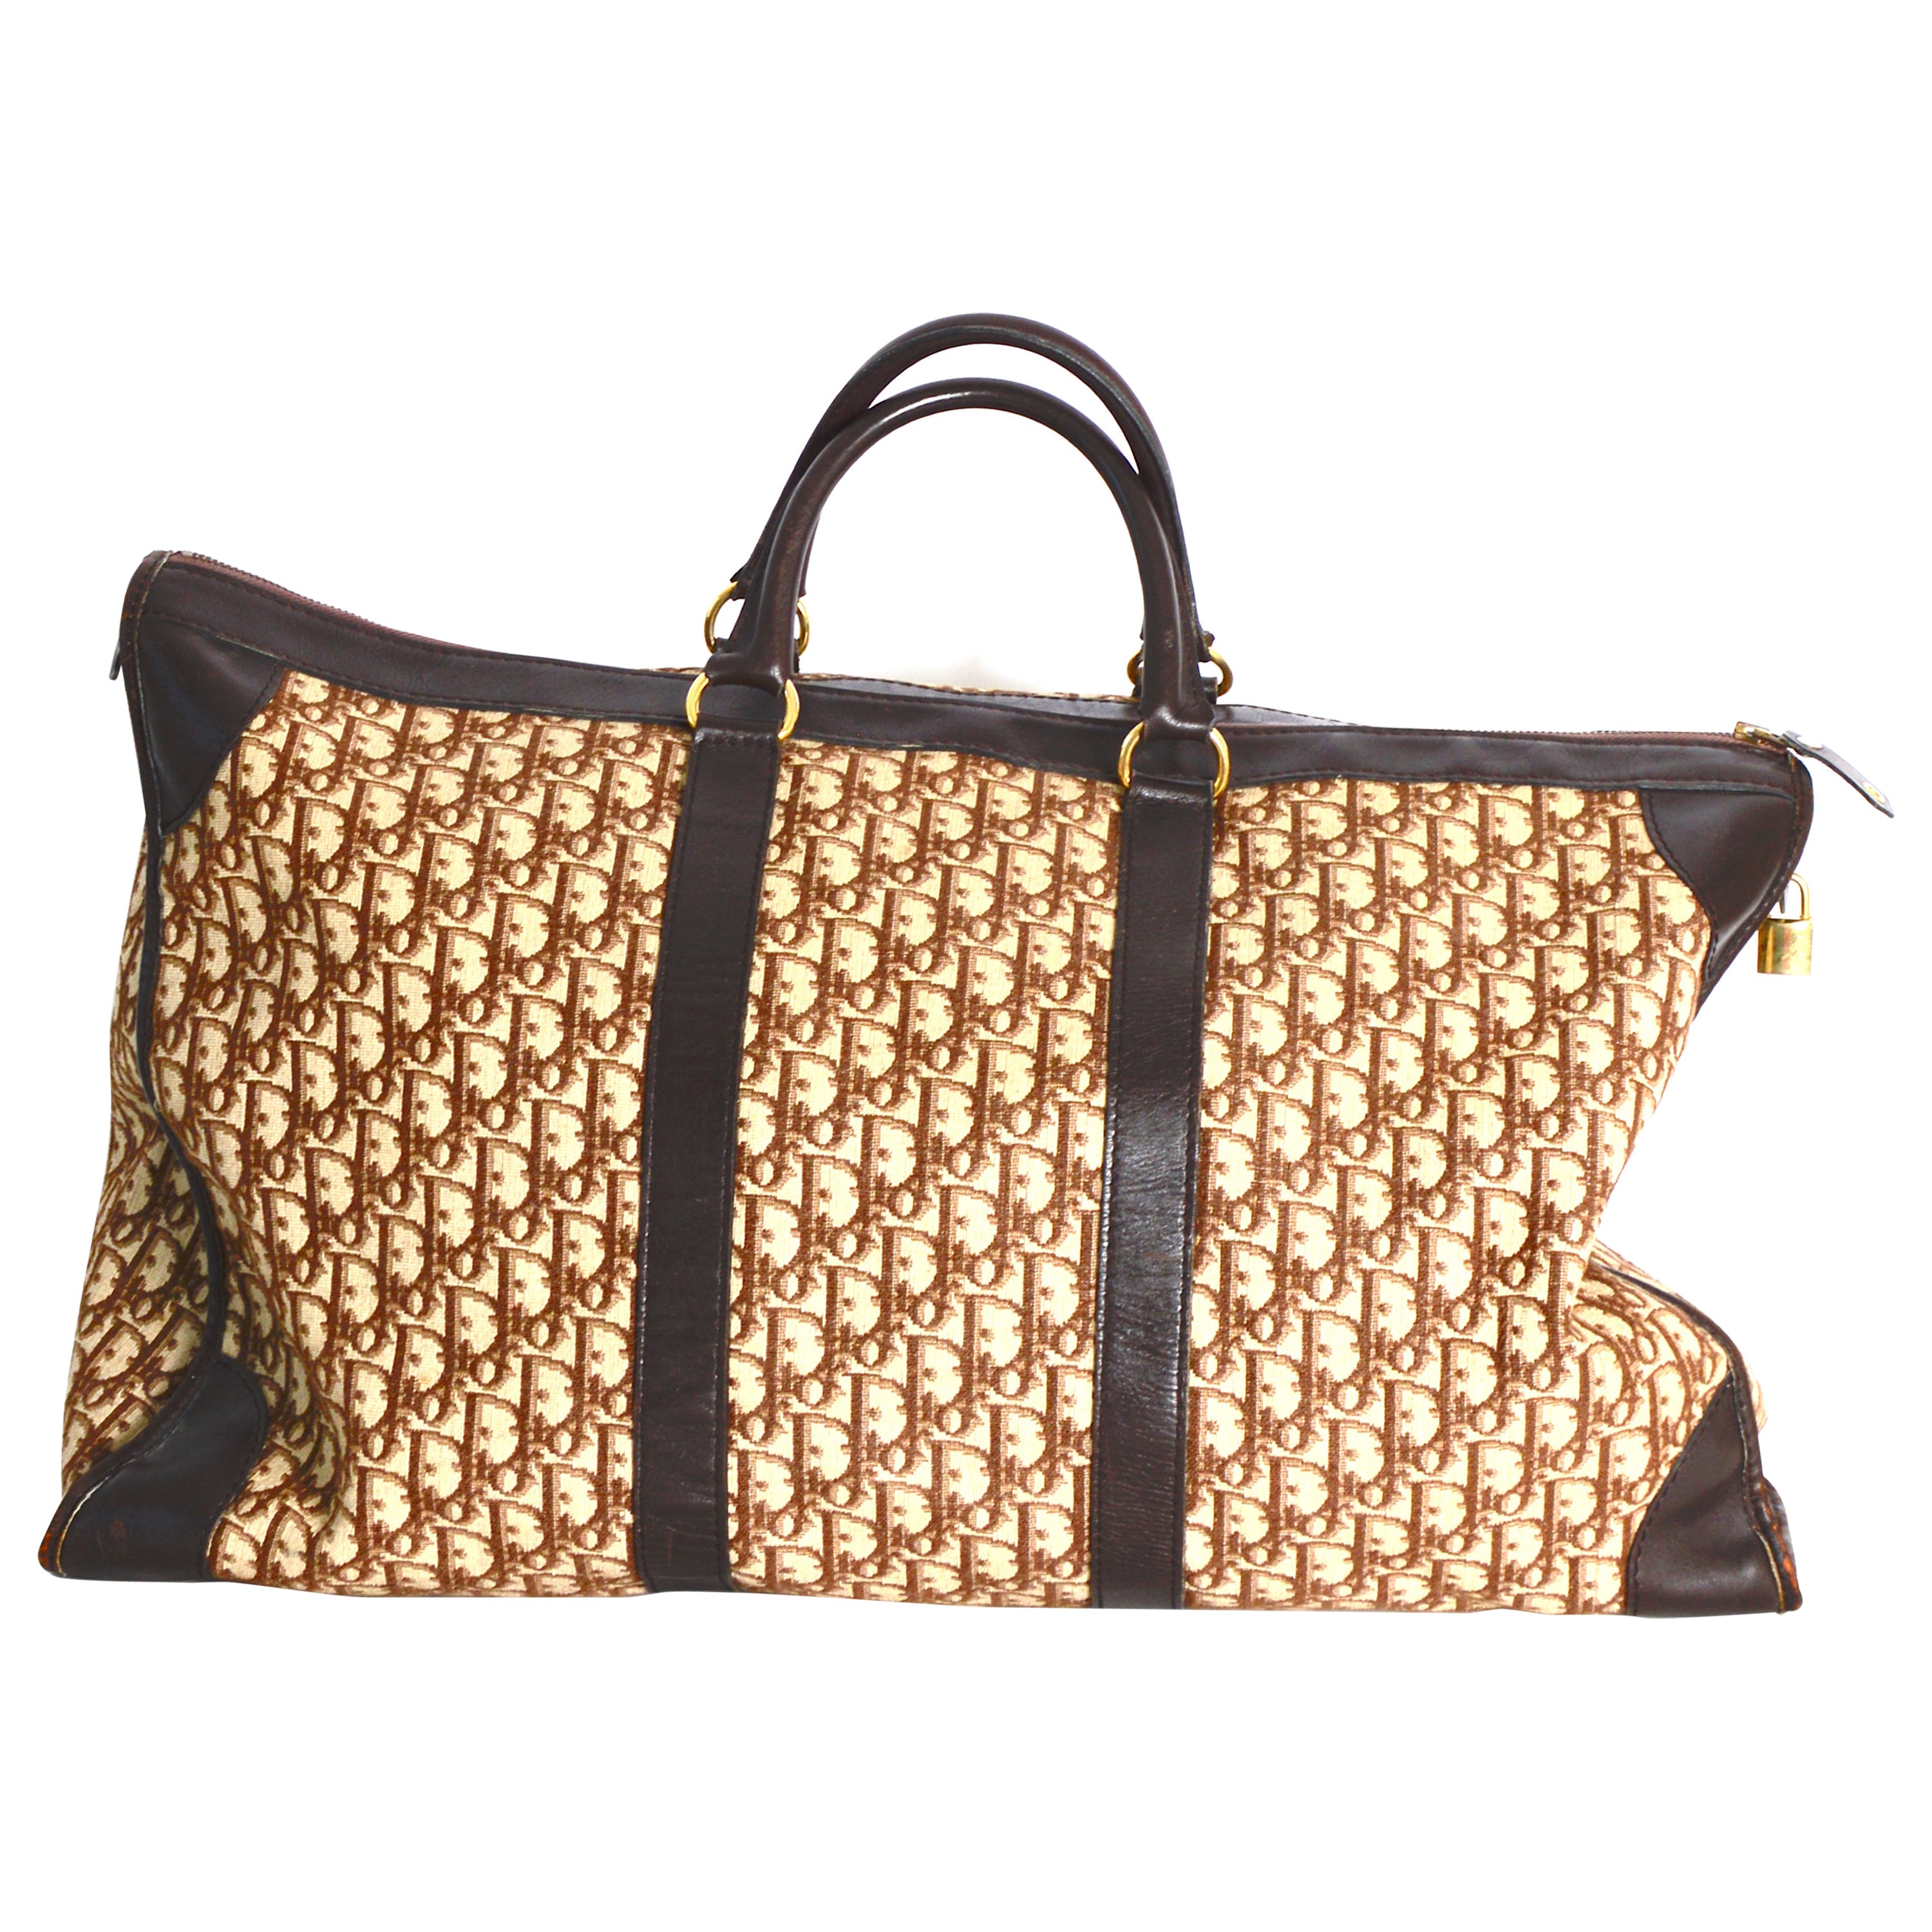 Delvaux-croco-vintage-handbag — VERLAINE